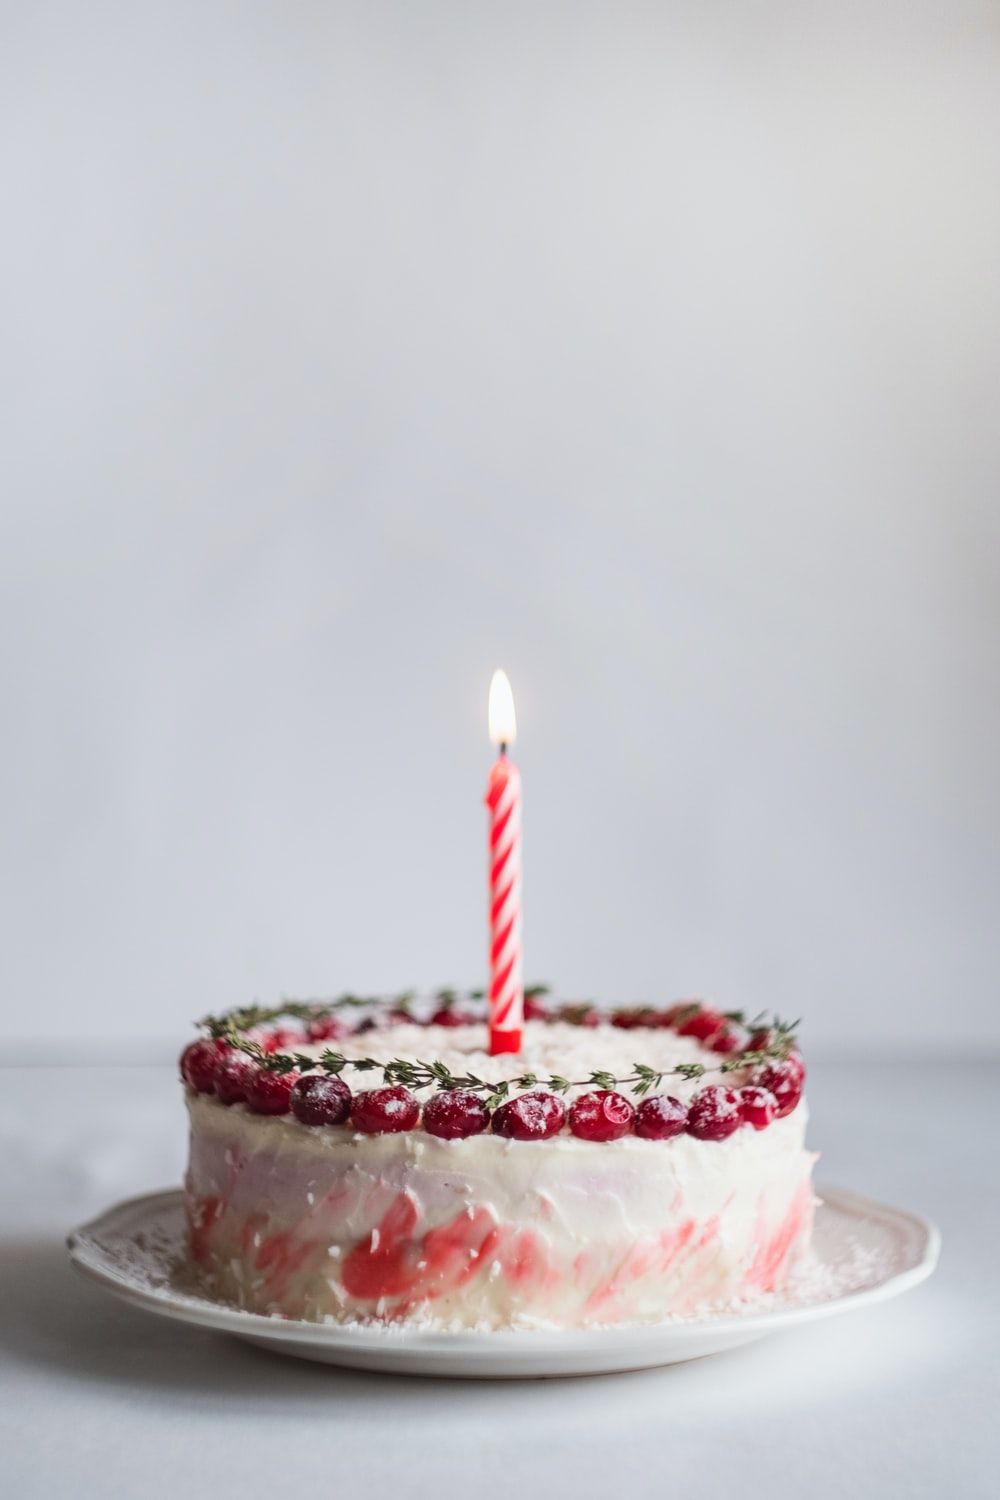 عکس کیک تولد ساده خاص با یک شمع روشن برای اینستاگرام